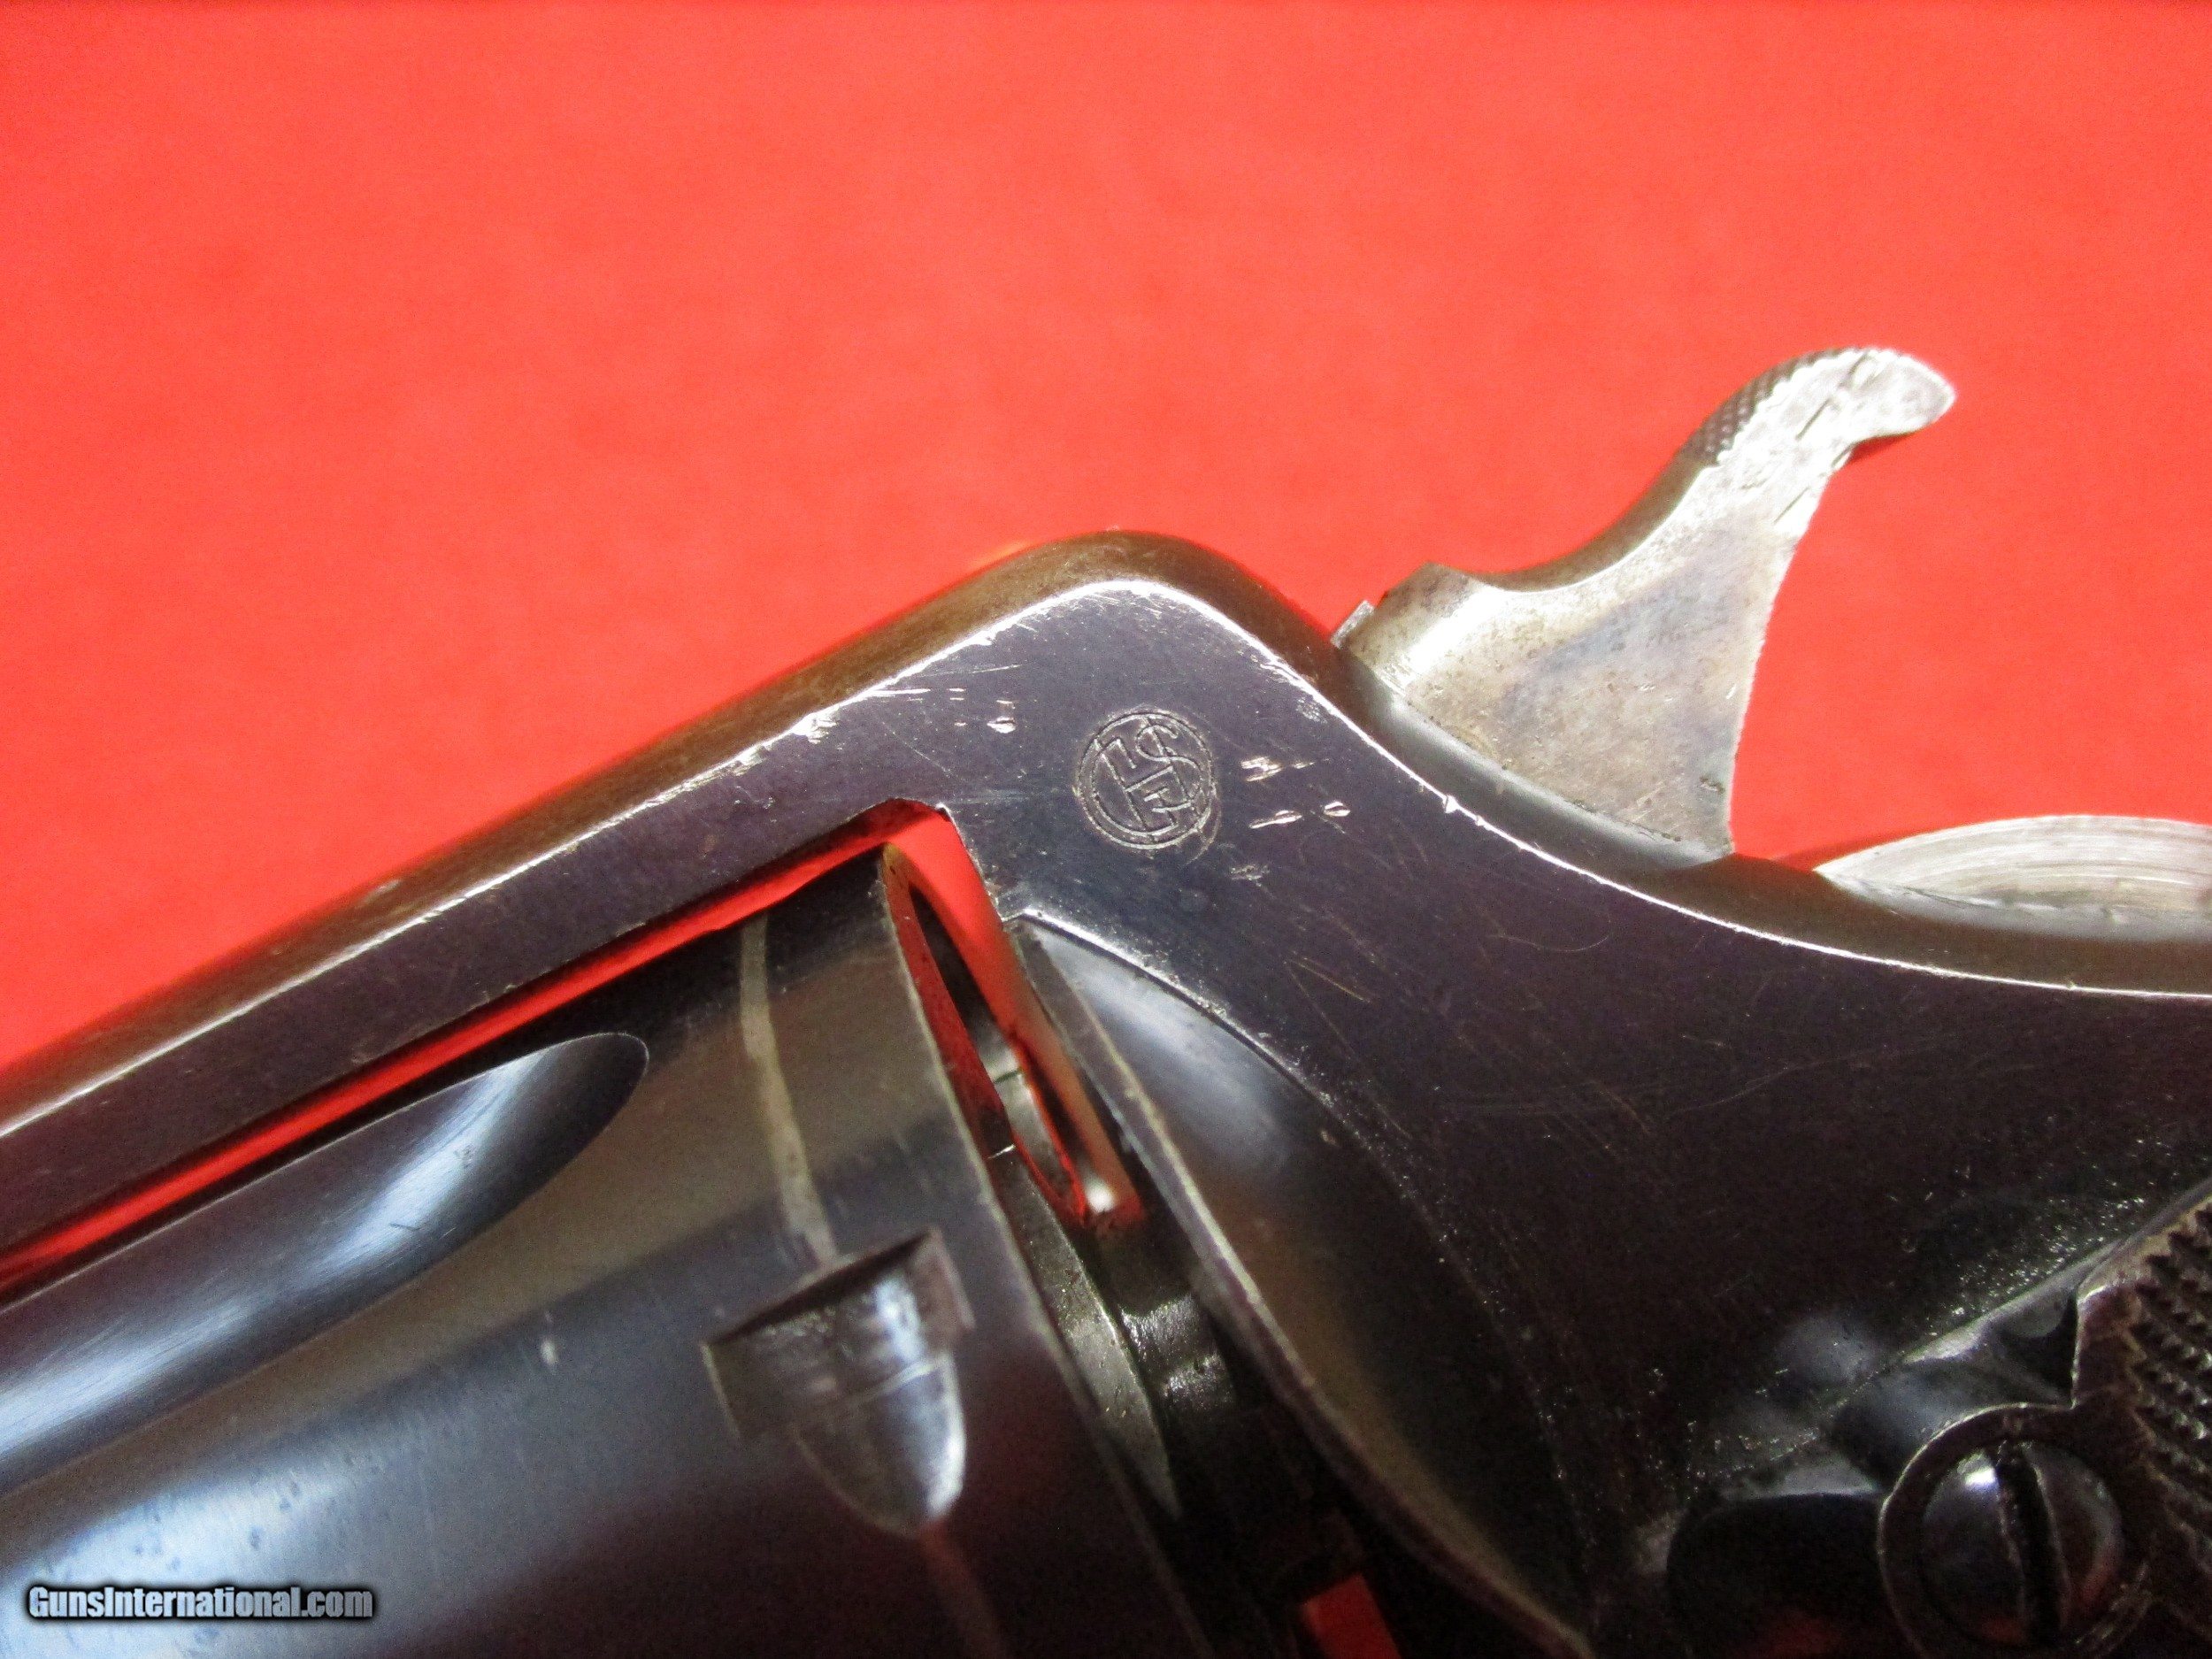 Full moon clip para revólver Smith & Wesson modelo 1917 e outros